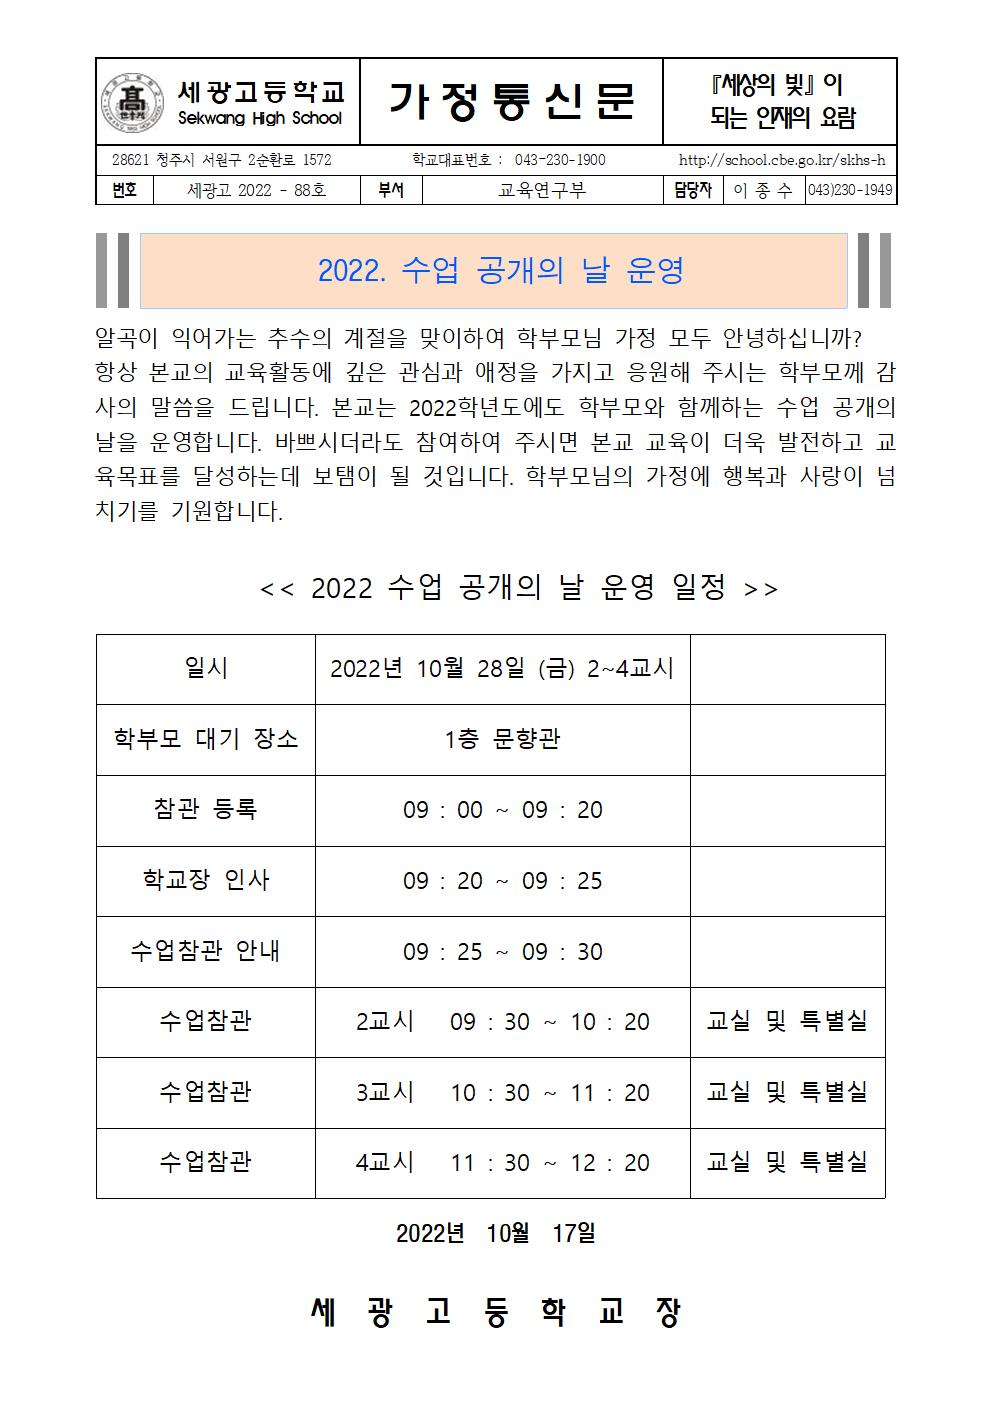 2022. 수업공개 가정통신문001